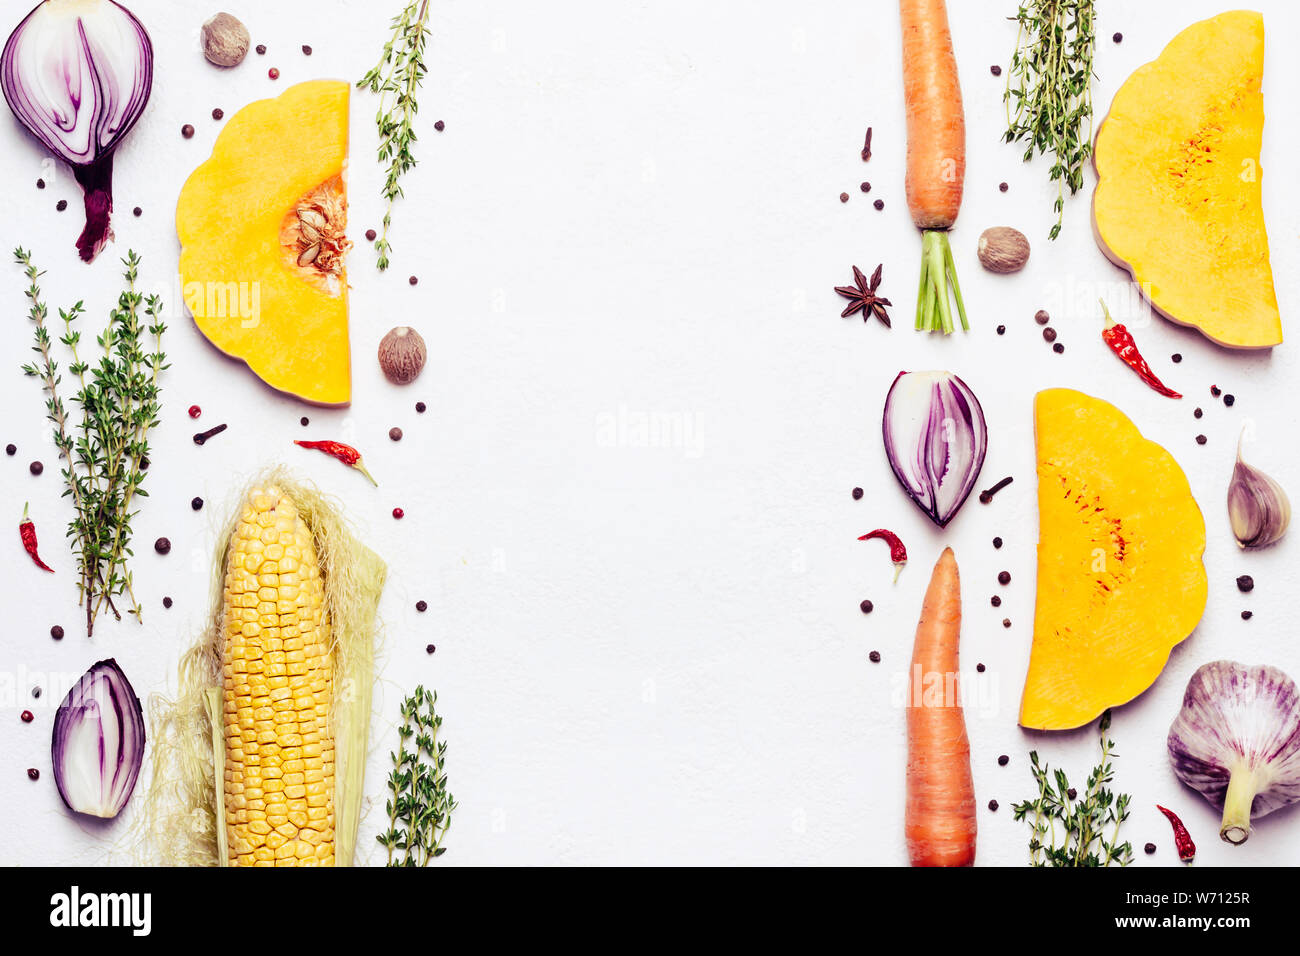 Kreative Gestaltung mit Herbst Gemüse, Kräutern und Gewürzen. Gesunde pflanzliche Nahrung. Stockfoto